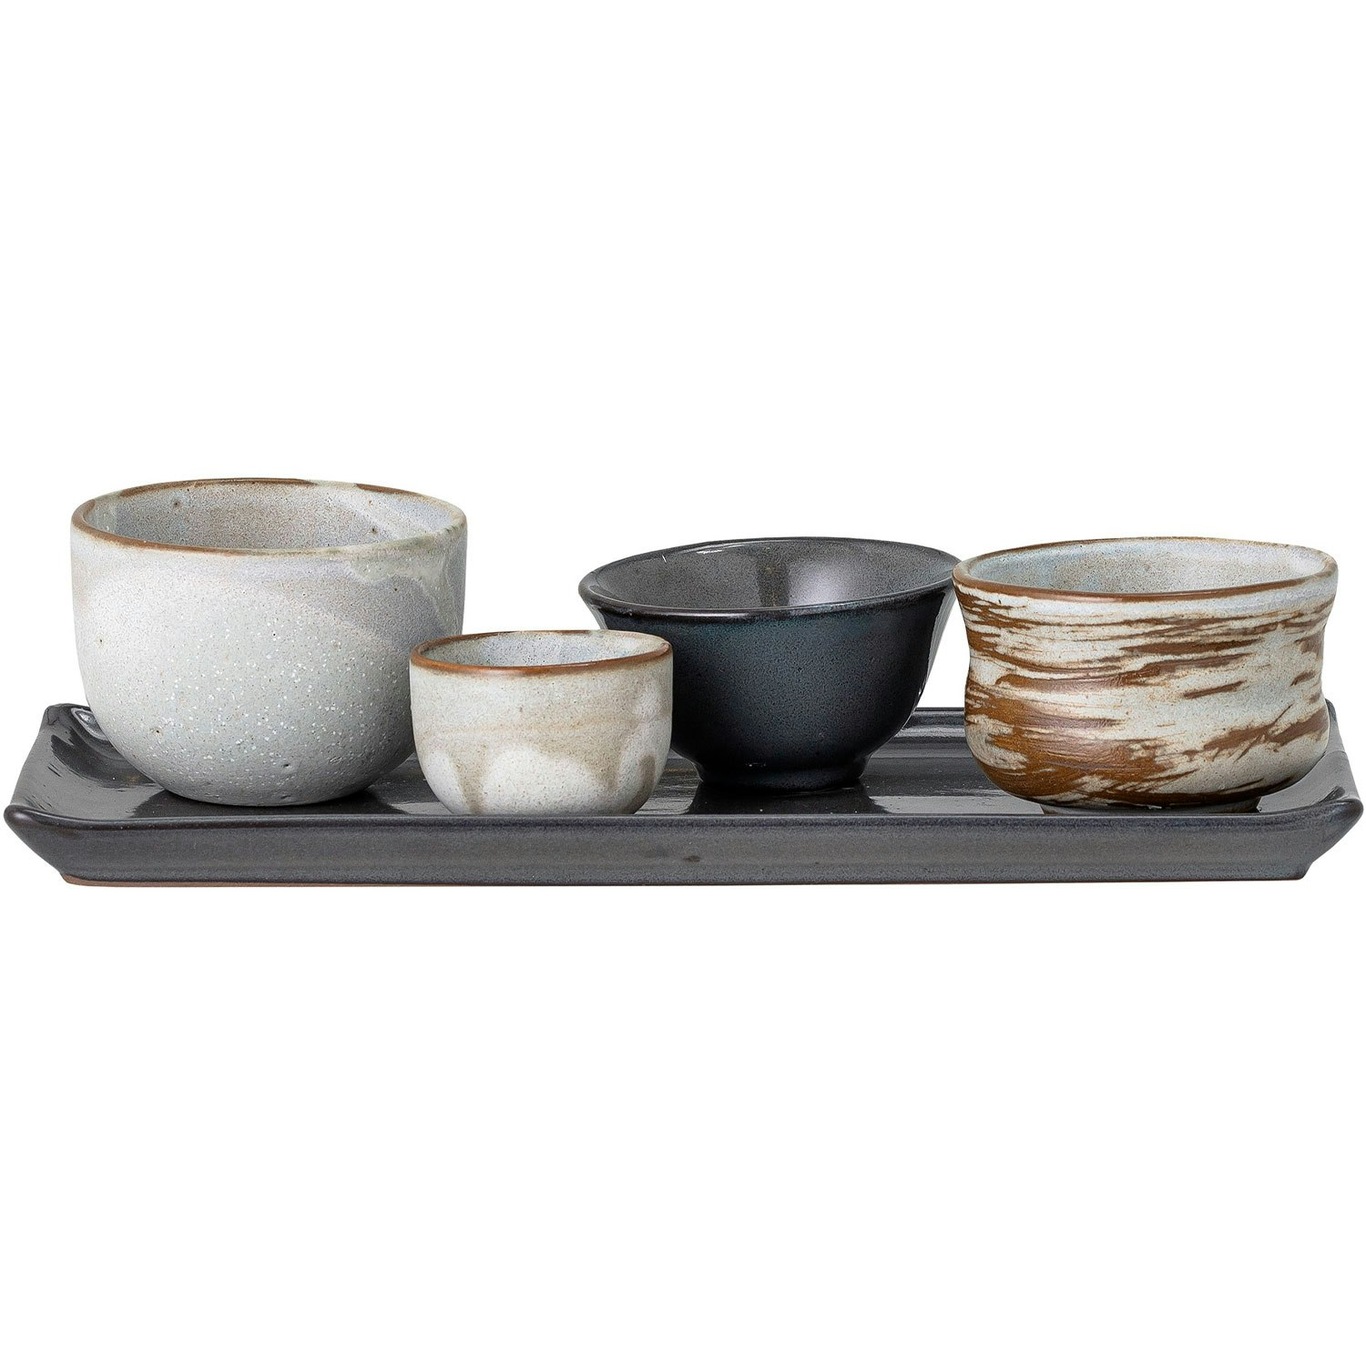 https://royaldesign.com/image/2/bloomingville-masami-sushi-set-white-stoneware-0?w=800&quality=80